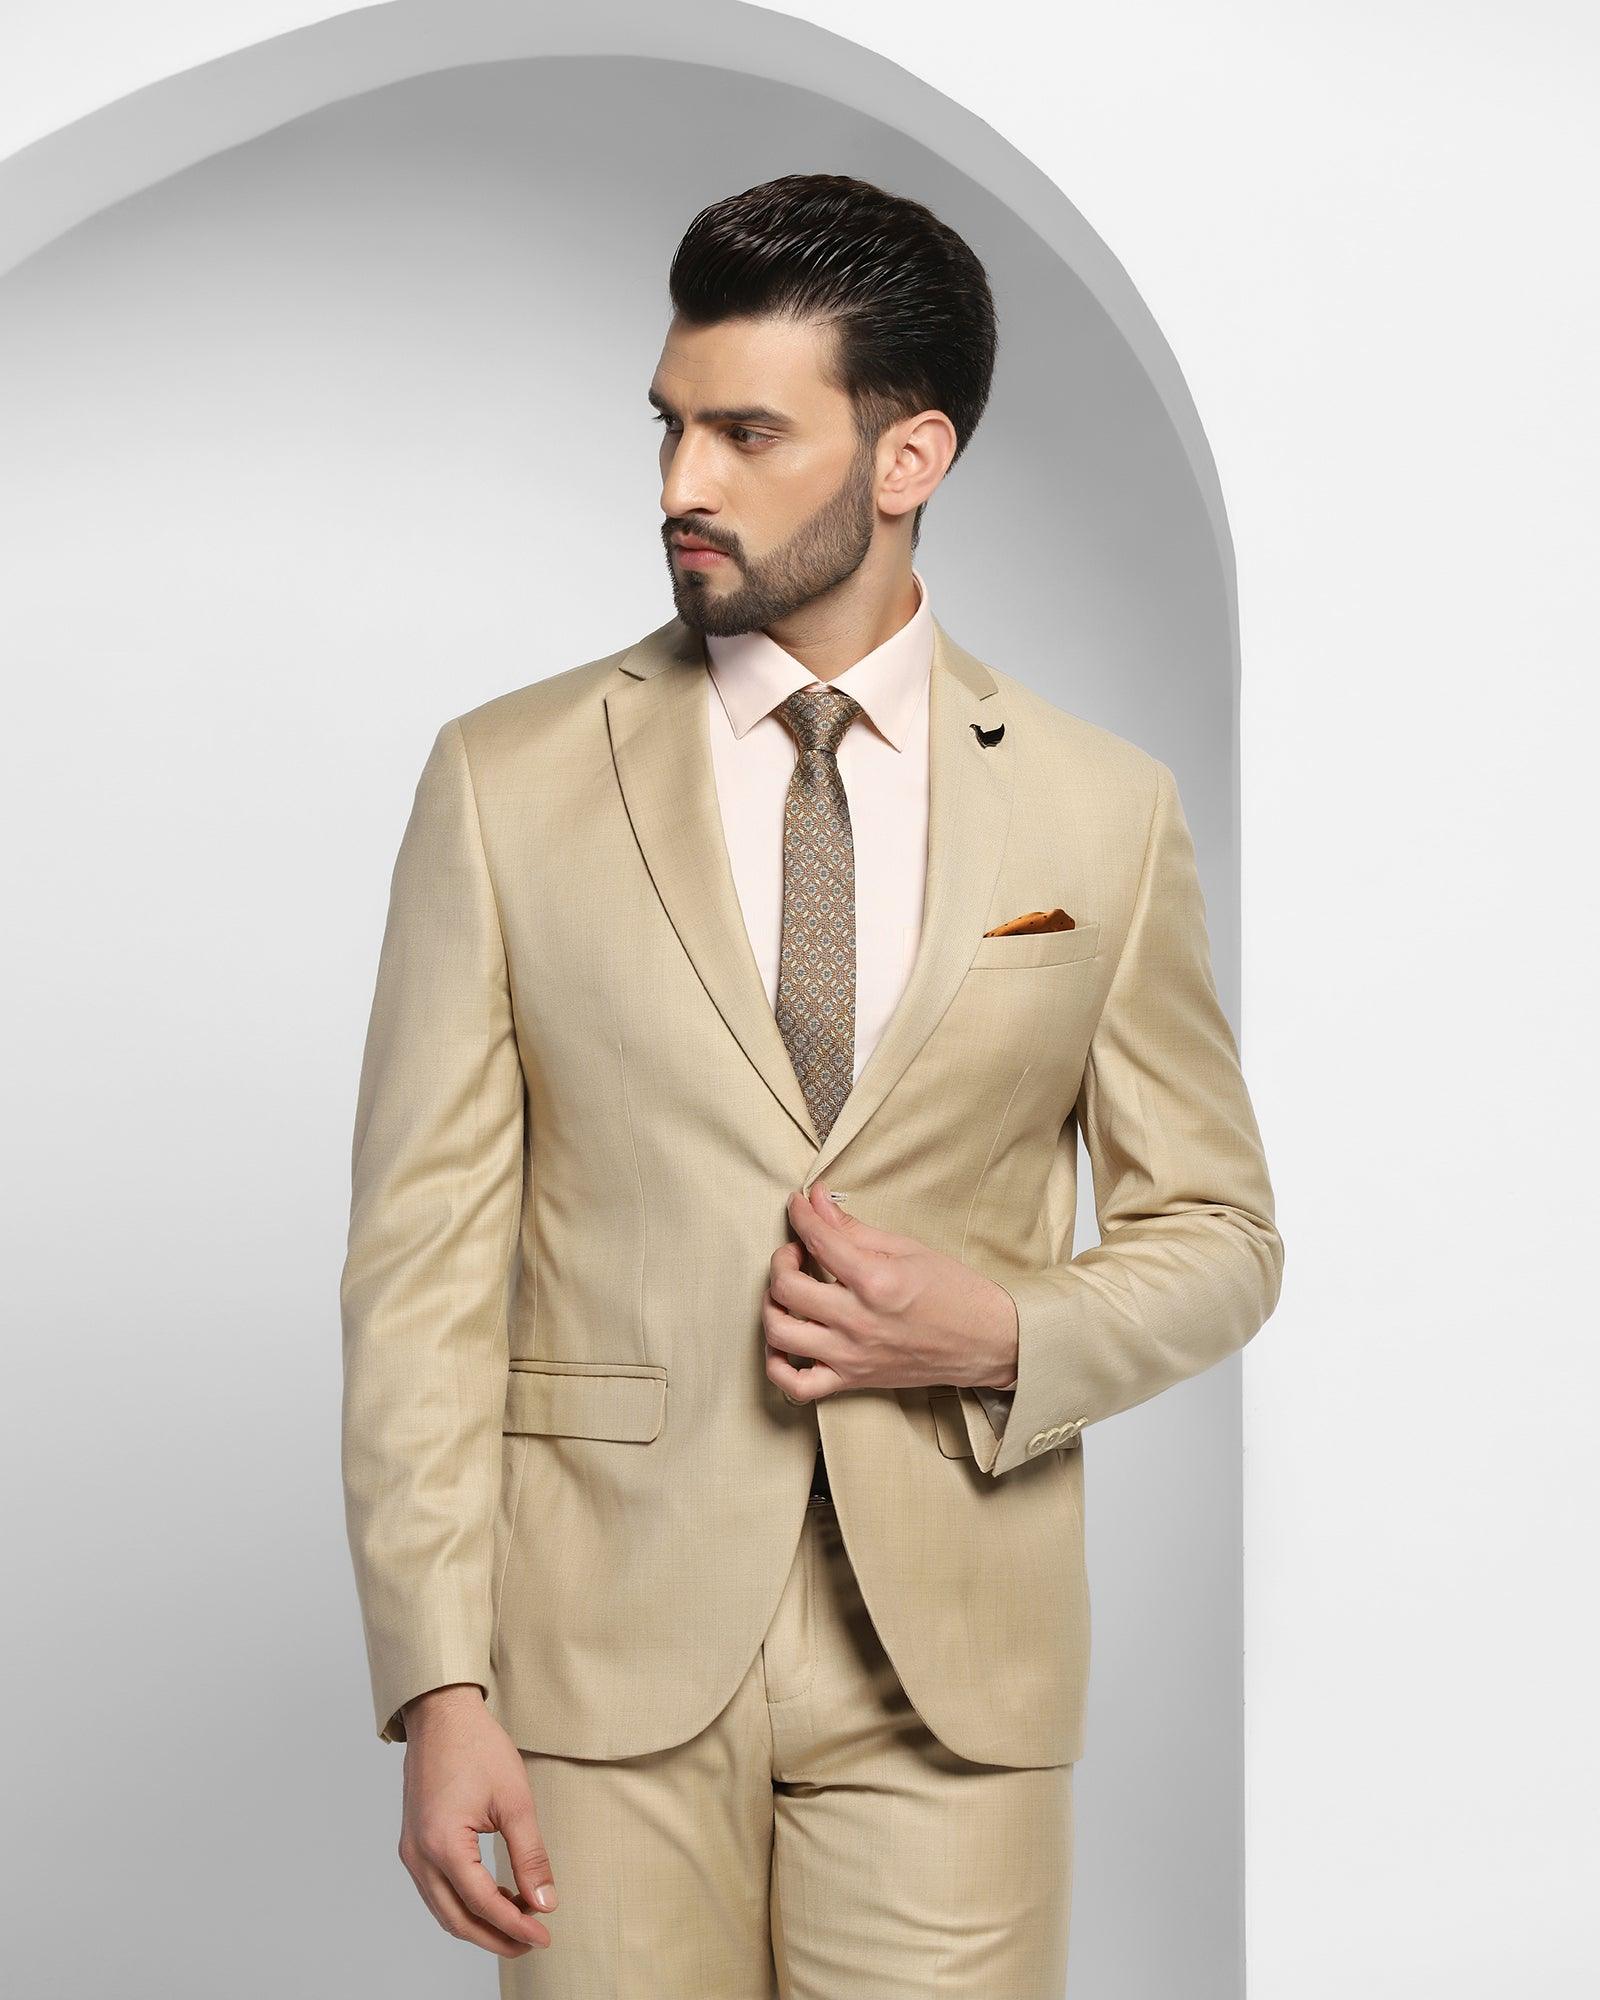 SUITS FOR MEN Men Wedding suits Blue 2 Piece Slim Fit Suits Elegant Fo–  SAINLY